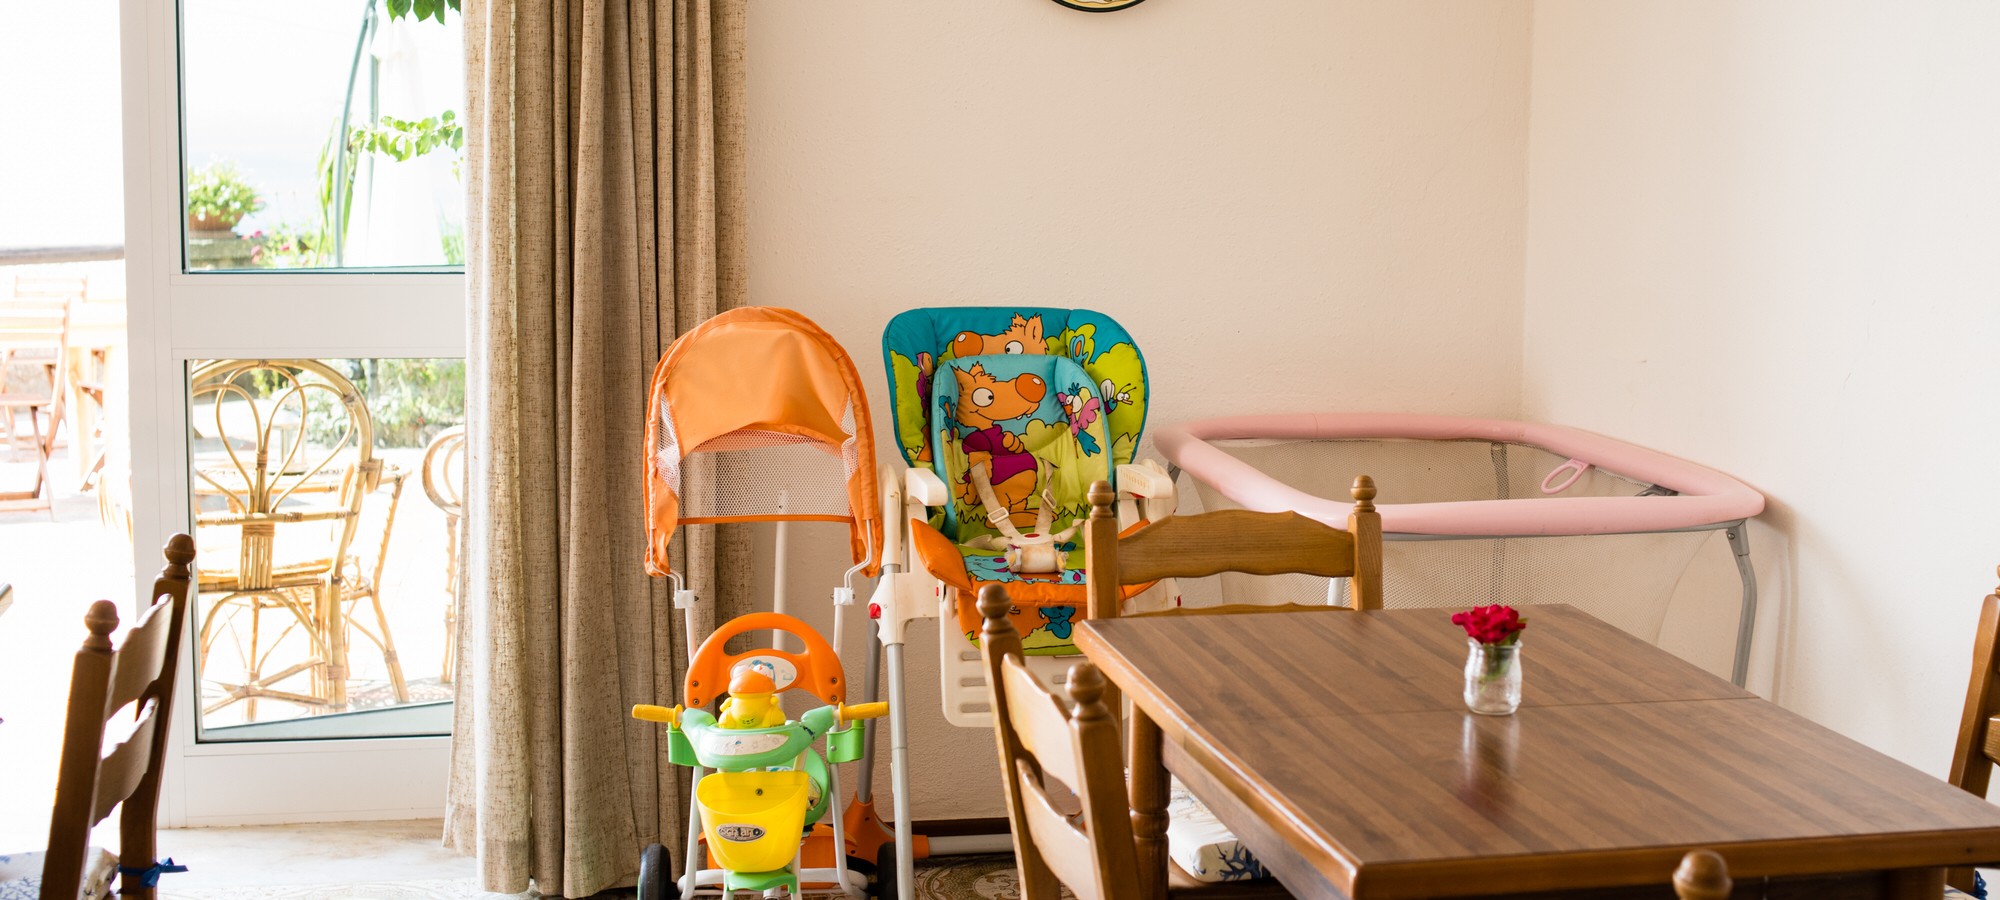 Bed and Breakfast ad Ischia, sala interna tradizionale con giochi per bimbi